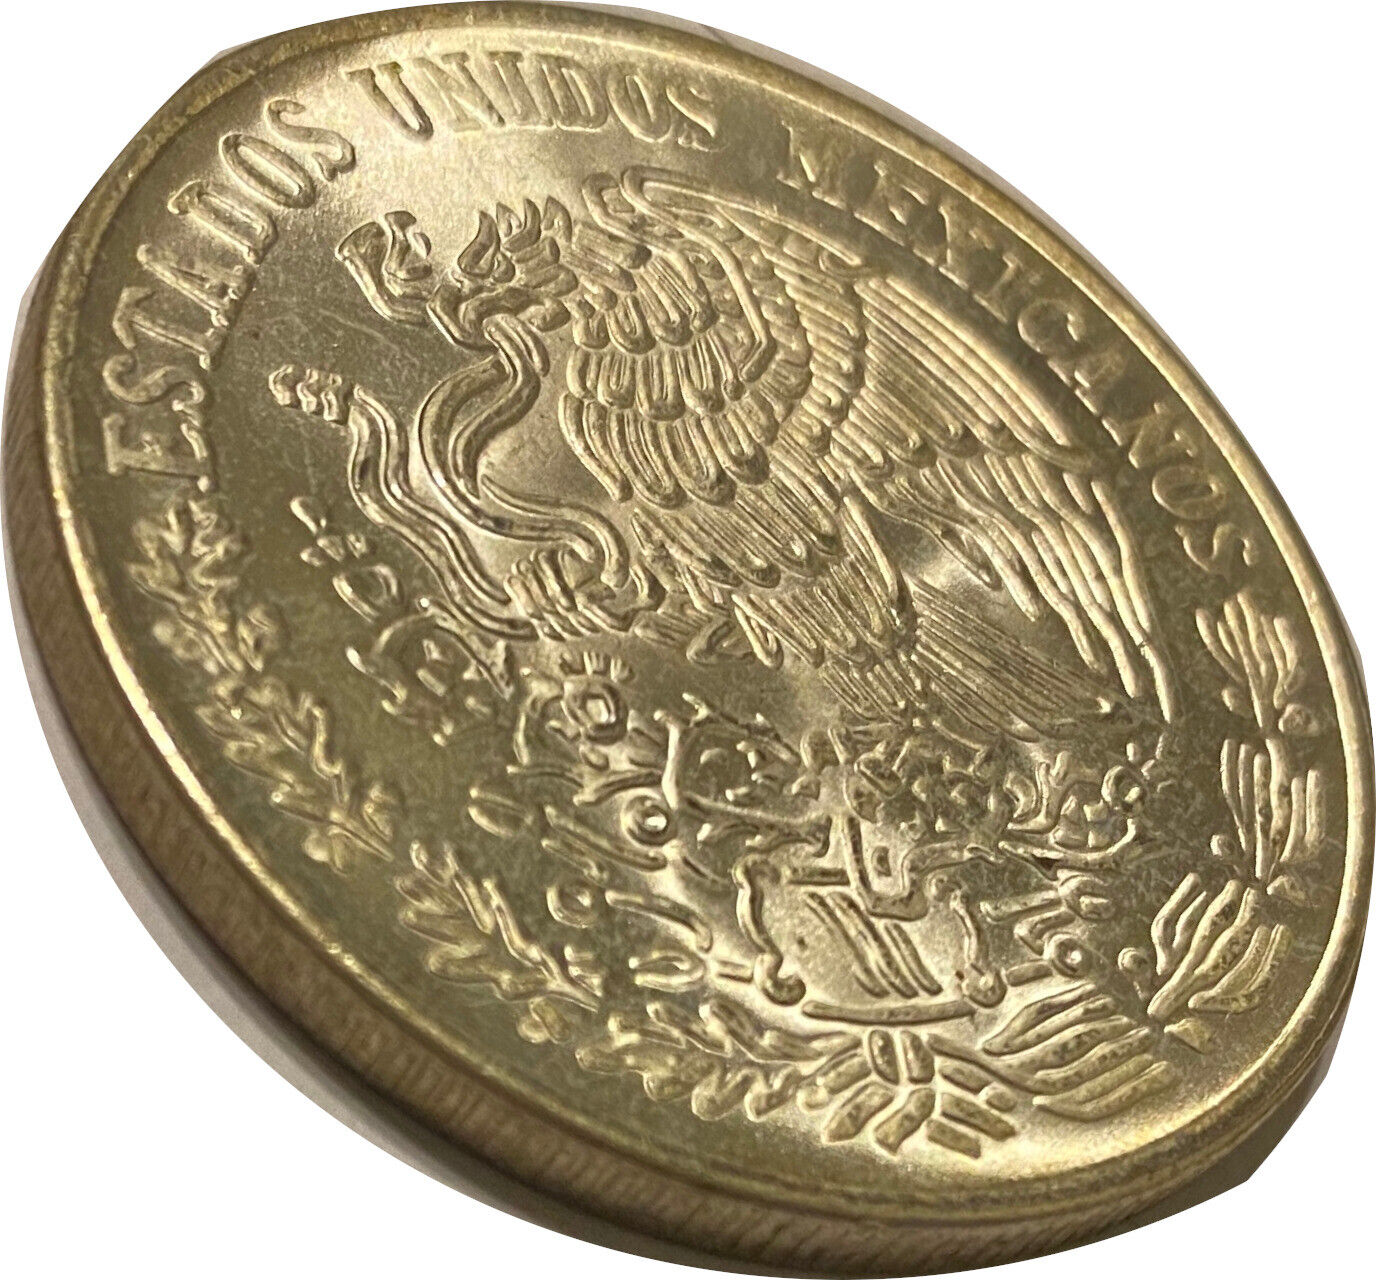 1977 Mexico 100 Pesos 0.643oz Silver BU/AU Coin